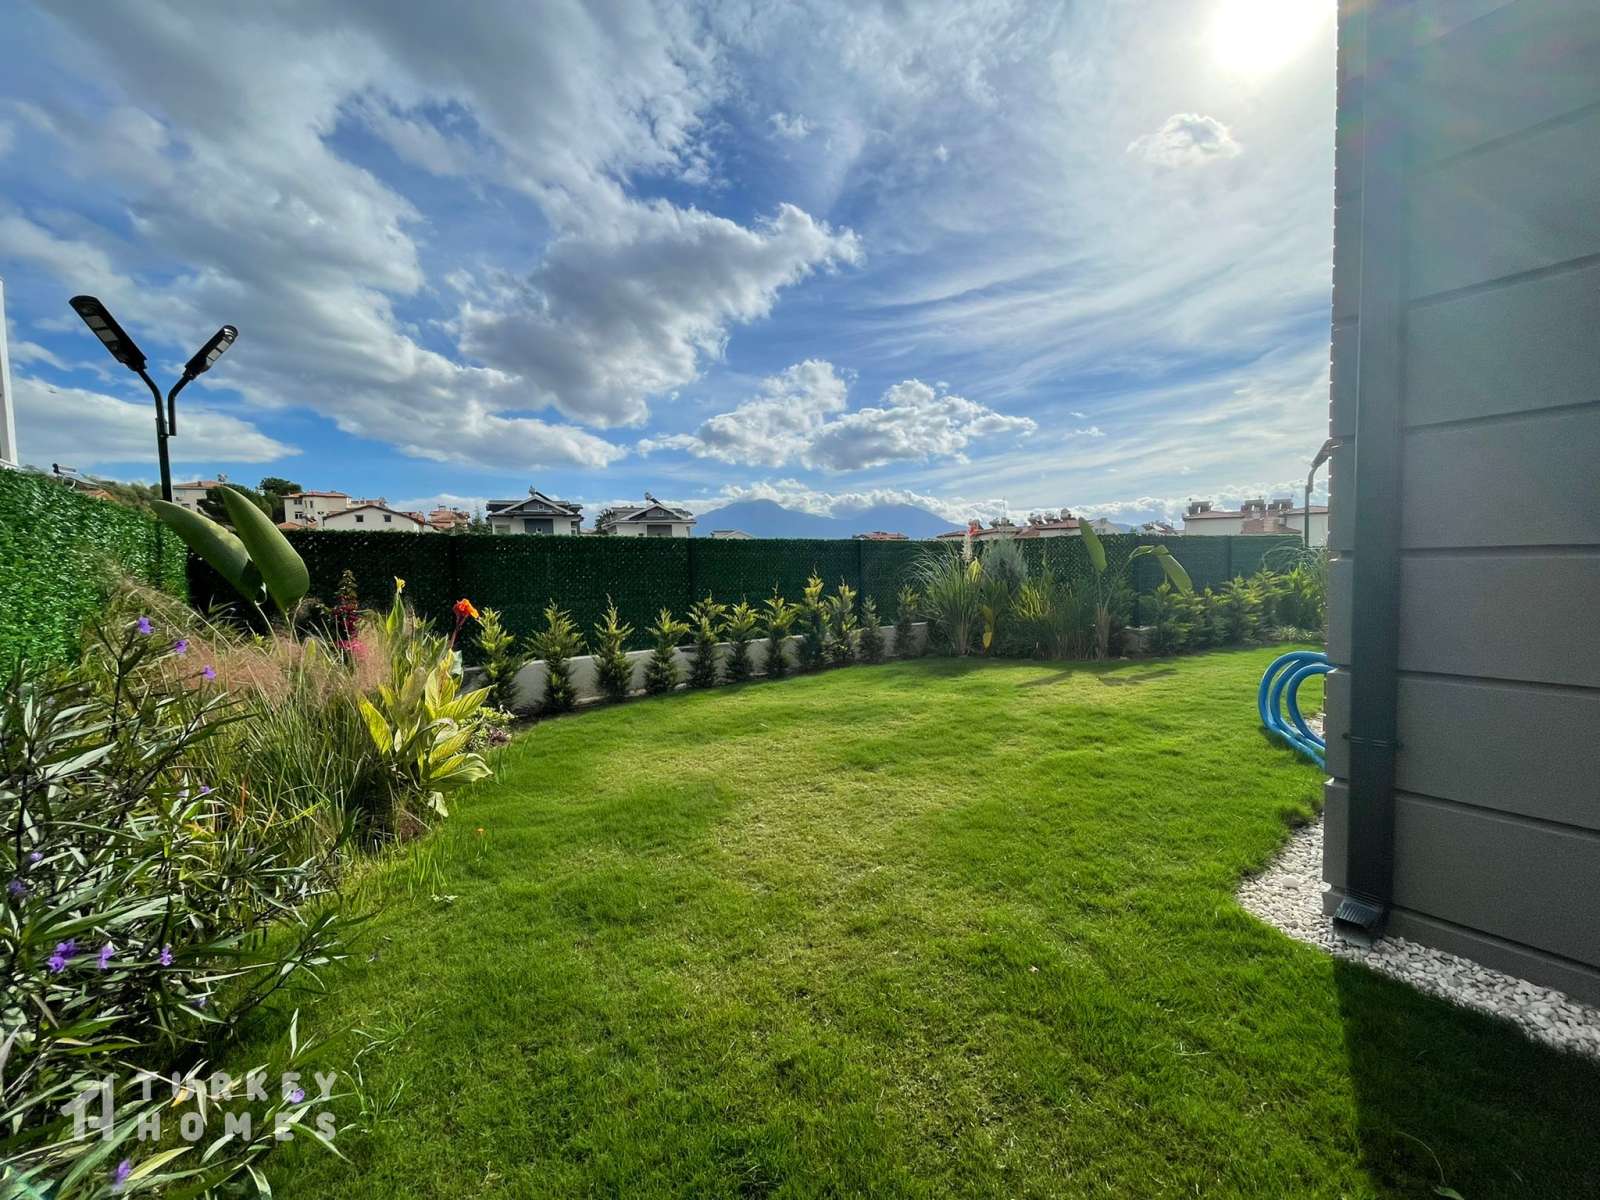 New Ciftlik Villas- Green Lawn